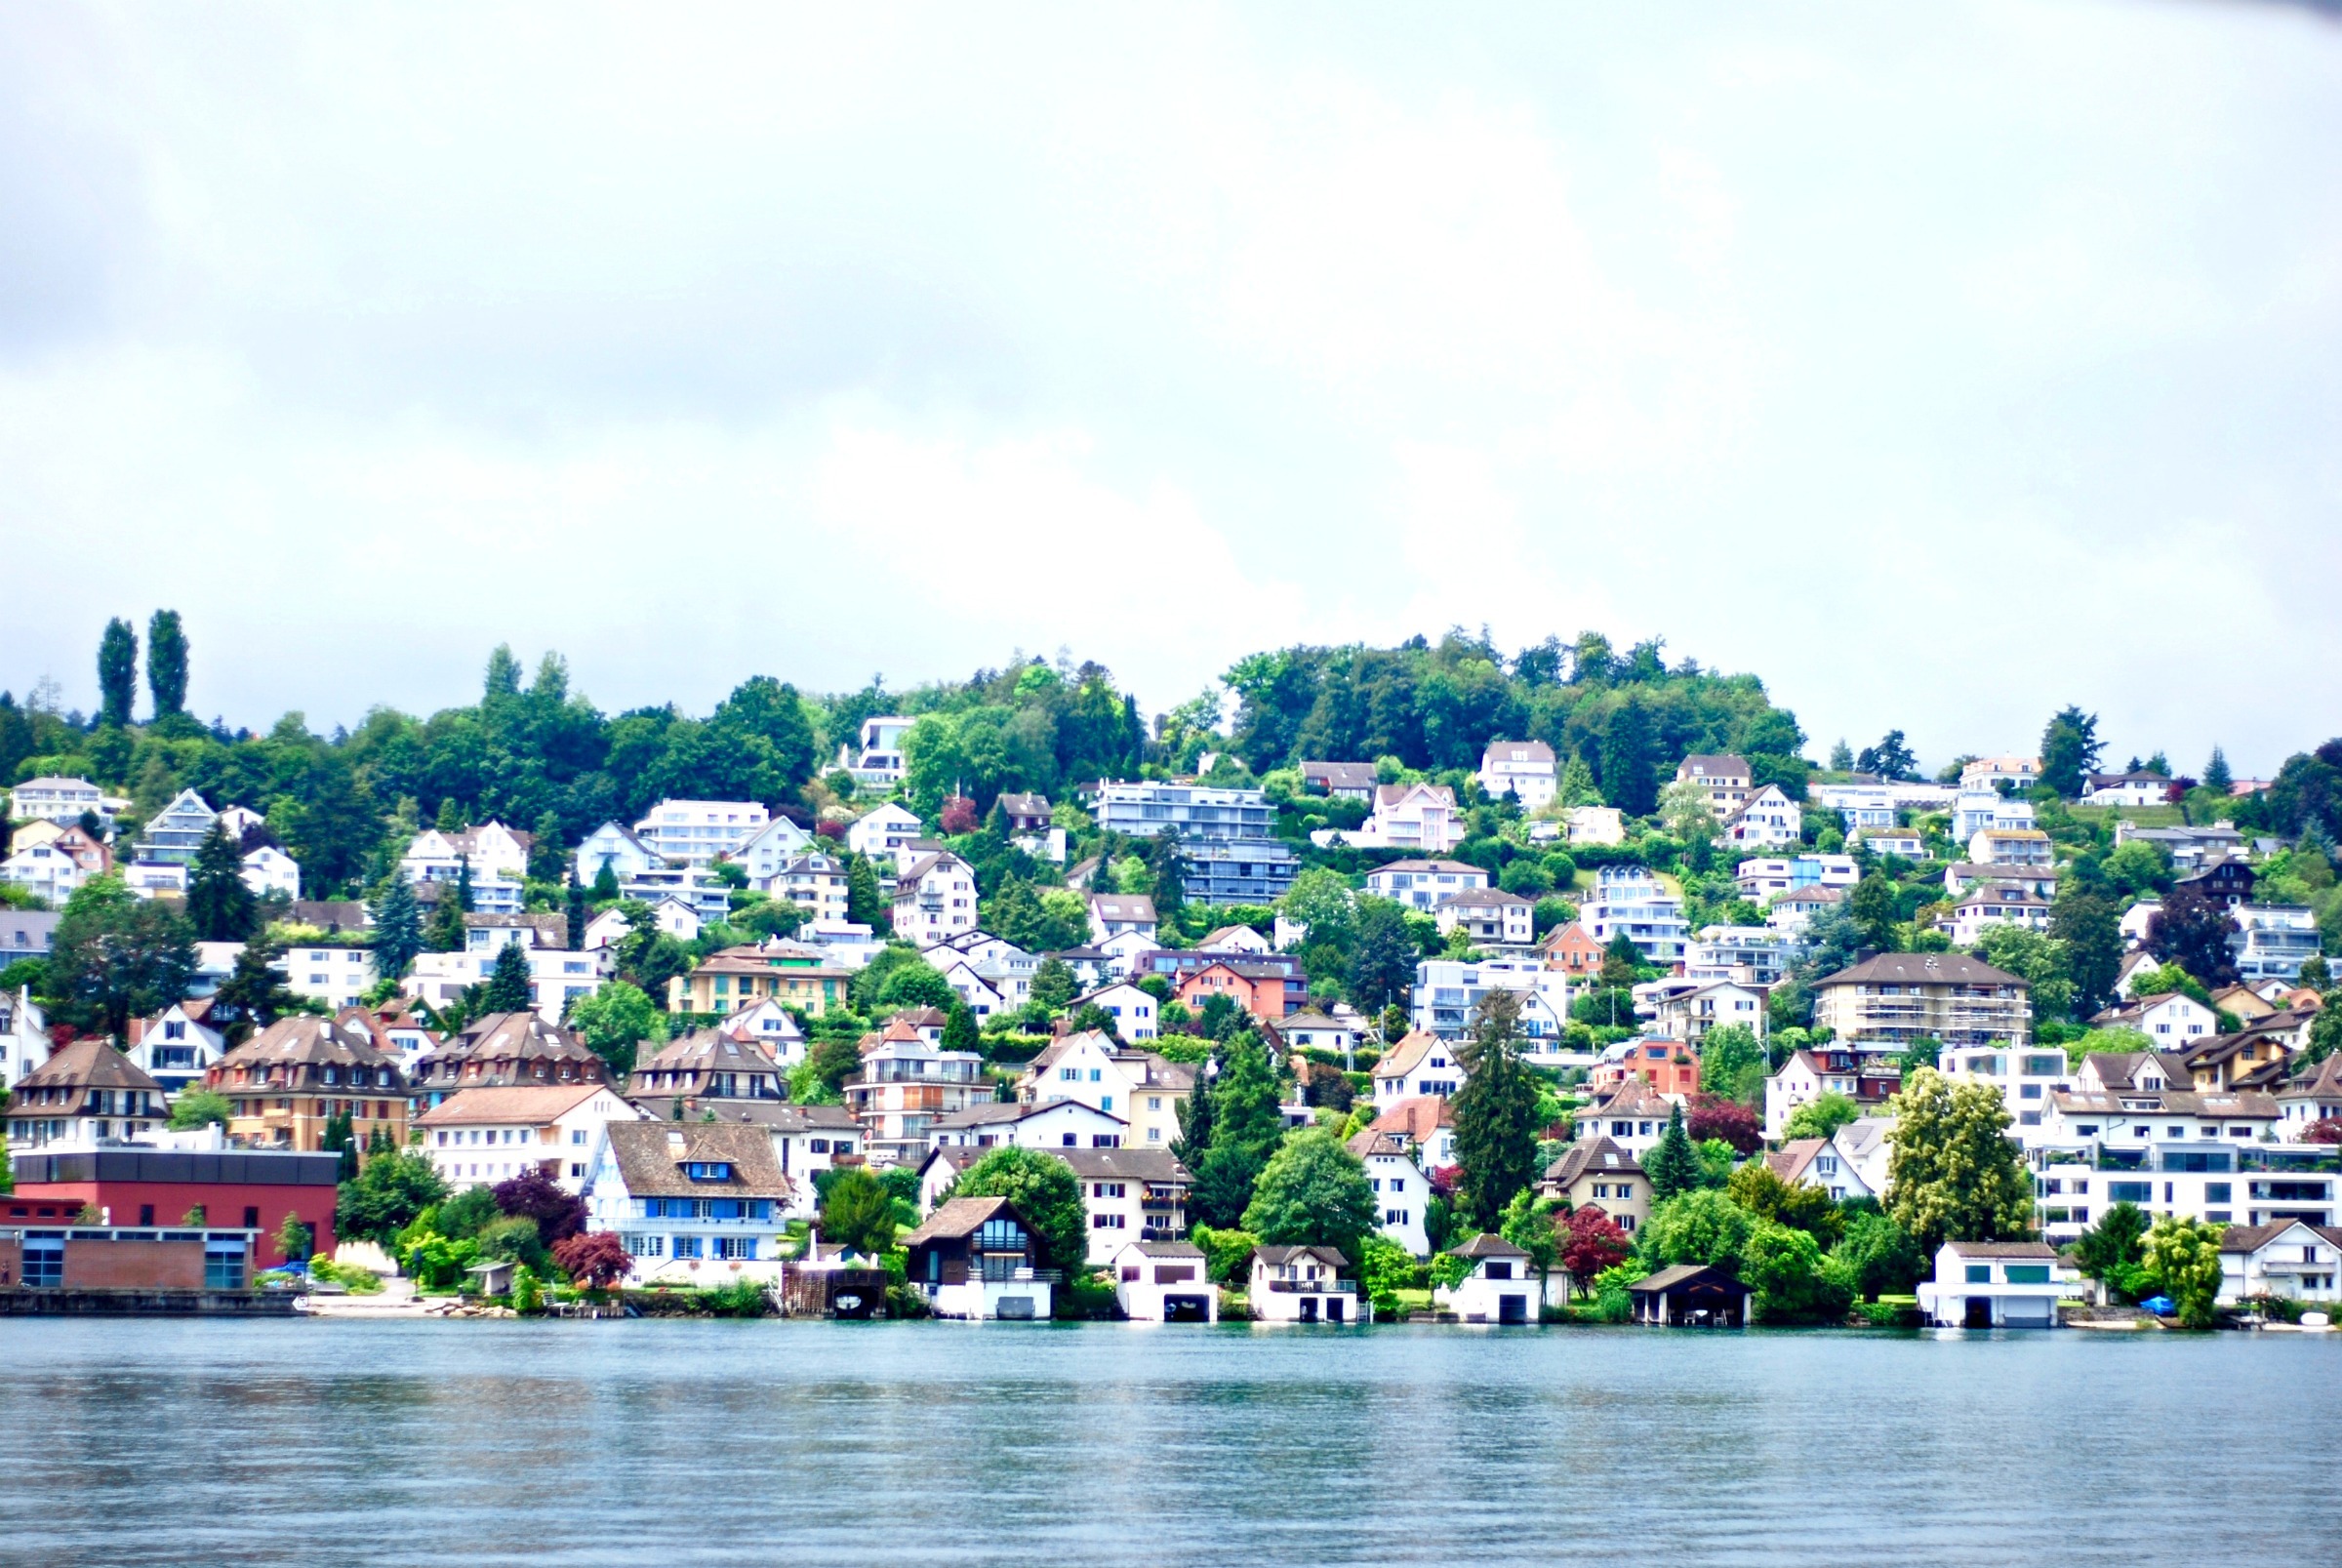 Lake Zurich Cruise , Zurich tours, Zurich sightseeing